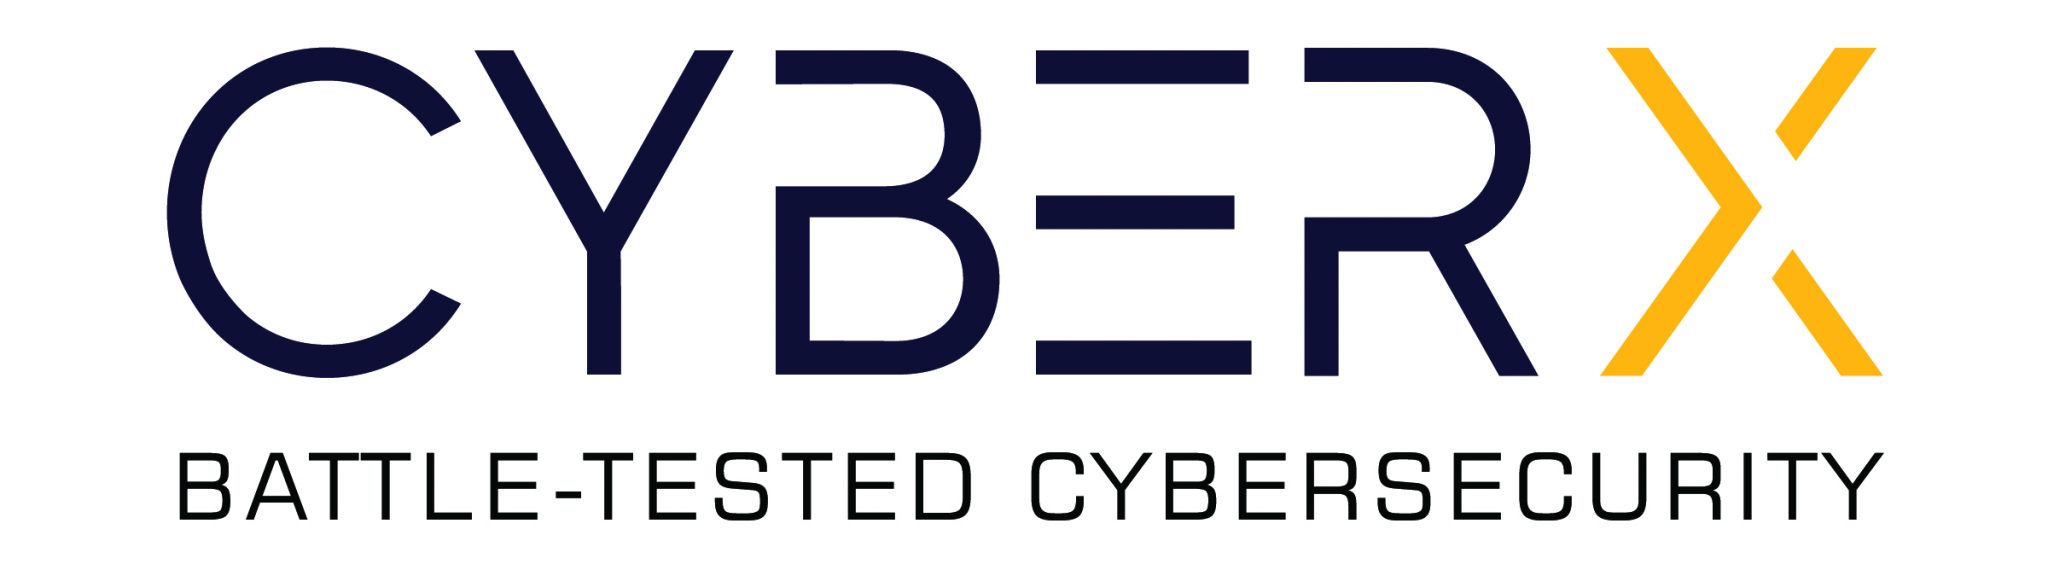 CyberX logo big